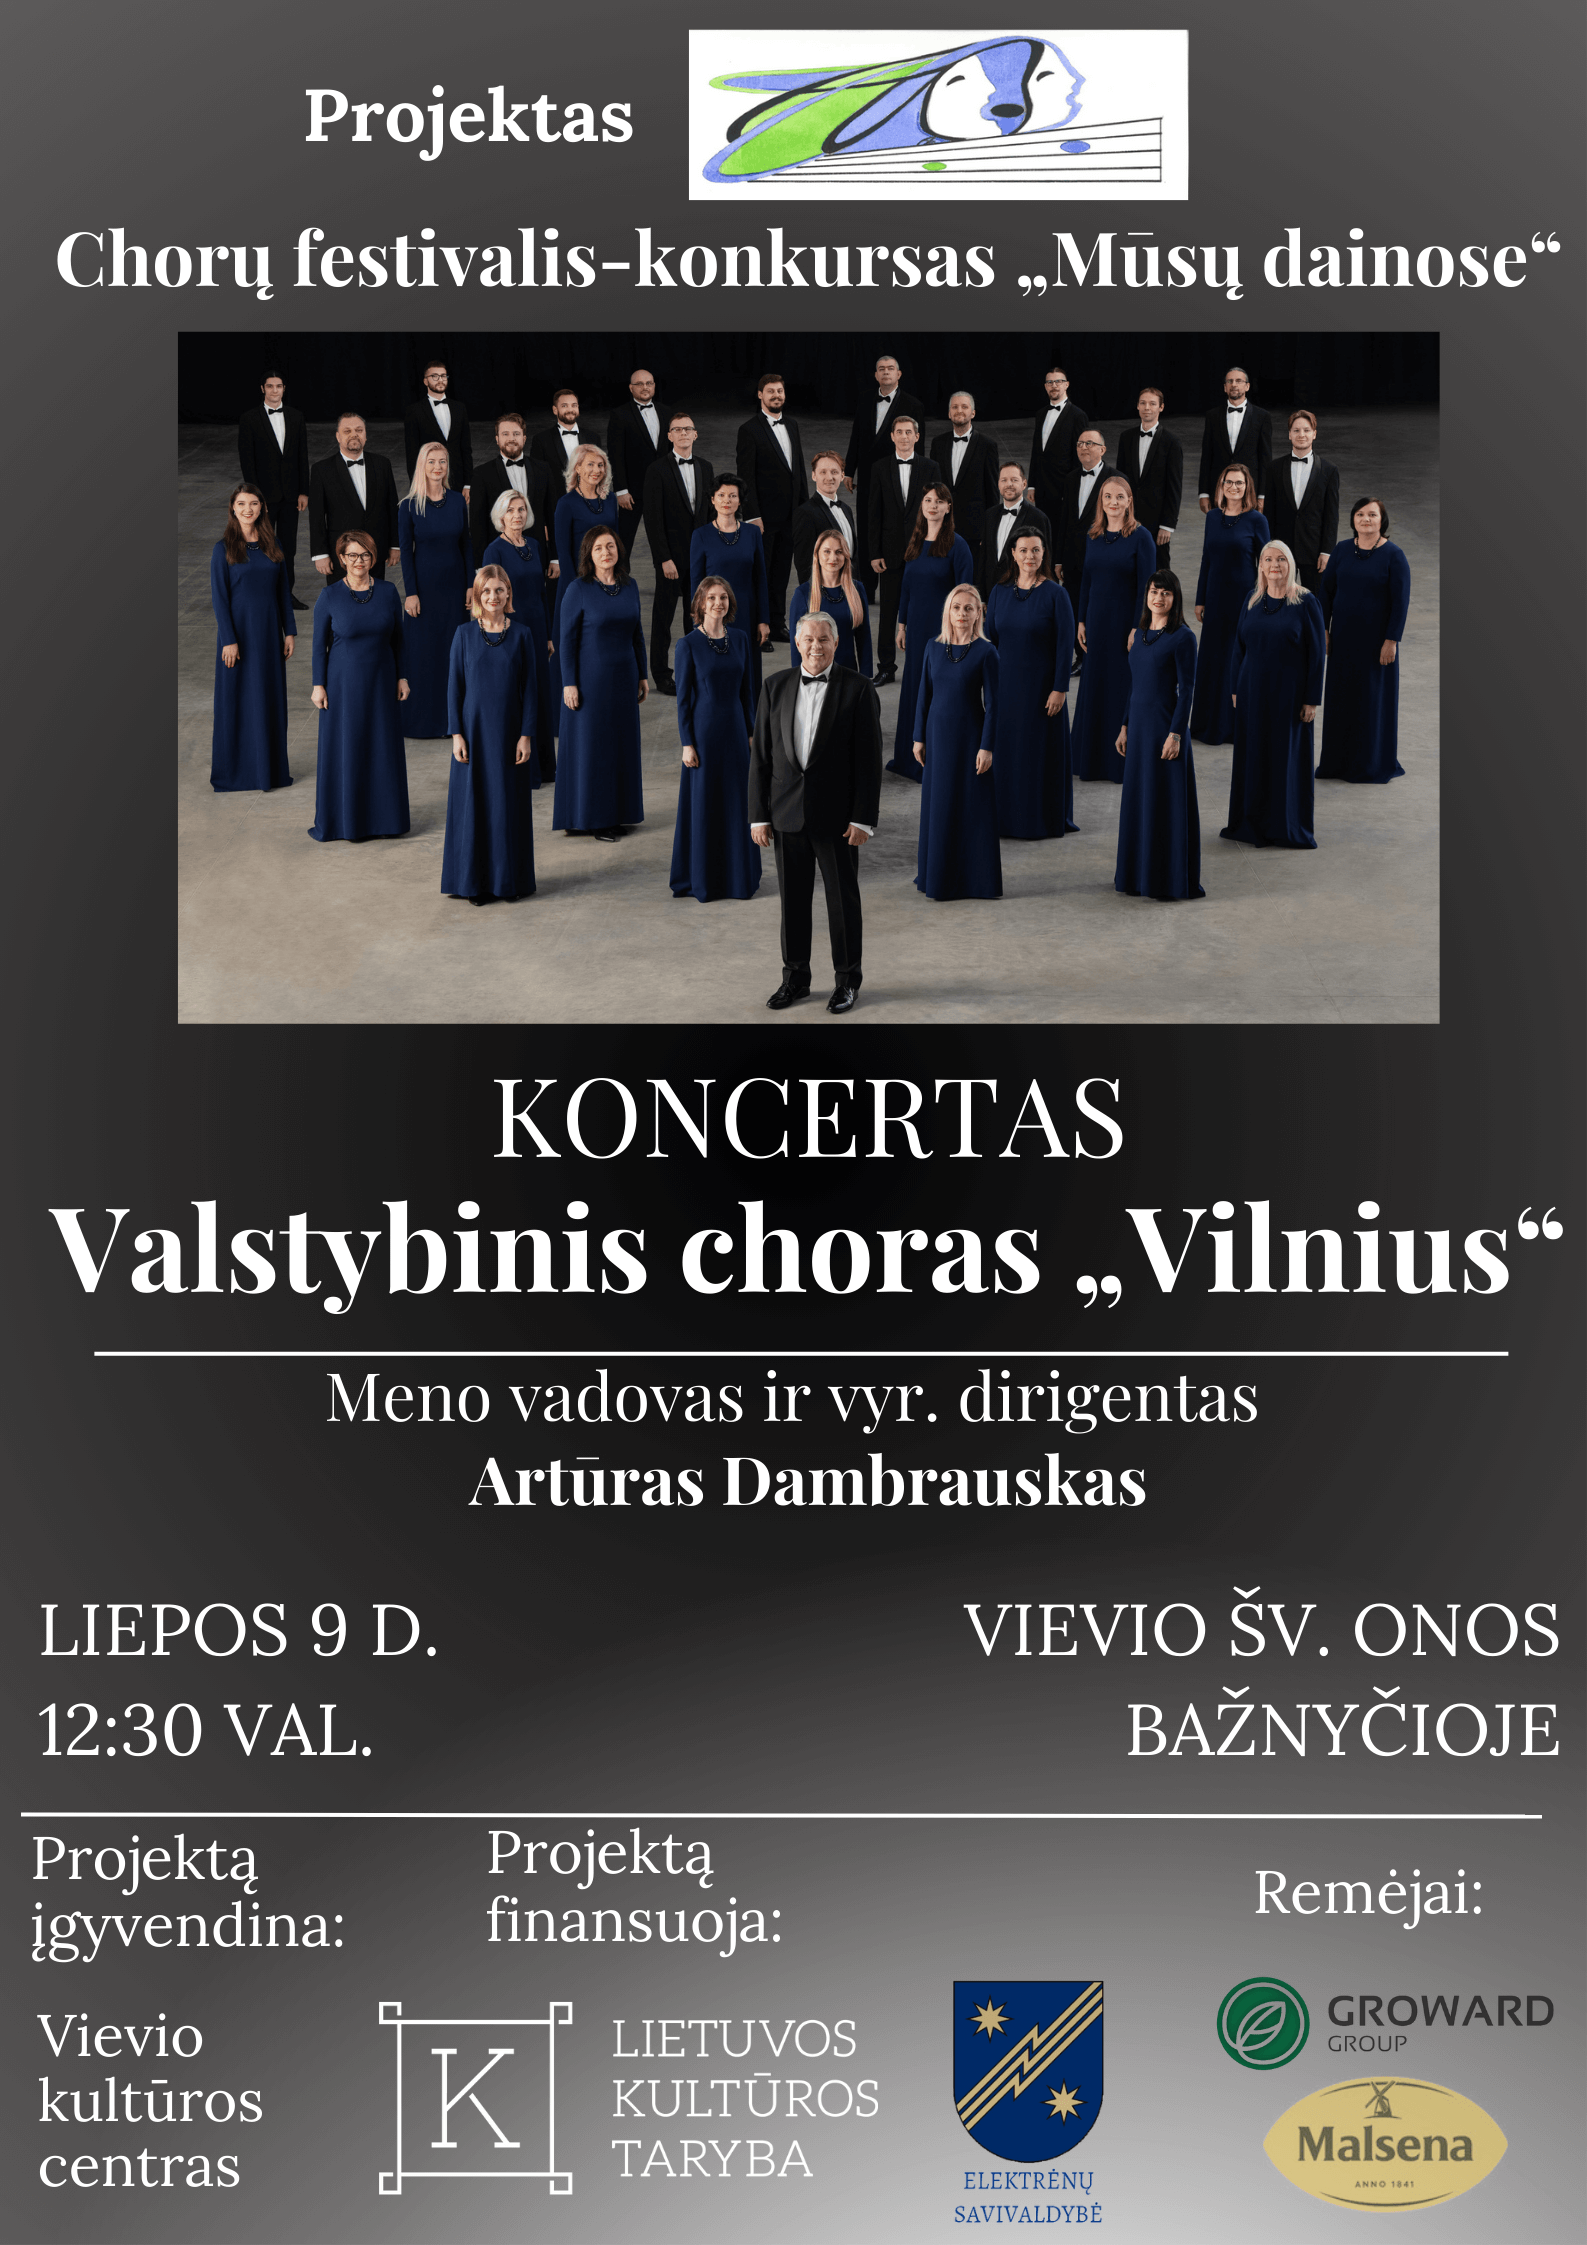 Valstybinio choro “Vilnius” koncertas Vievyje